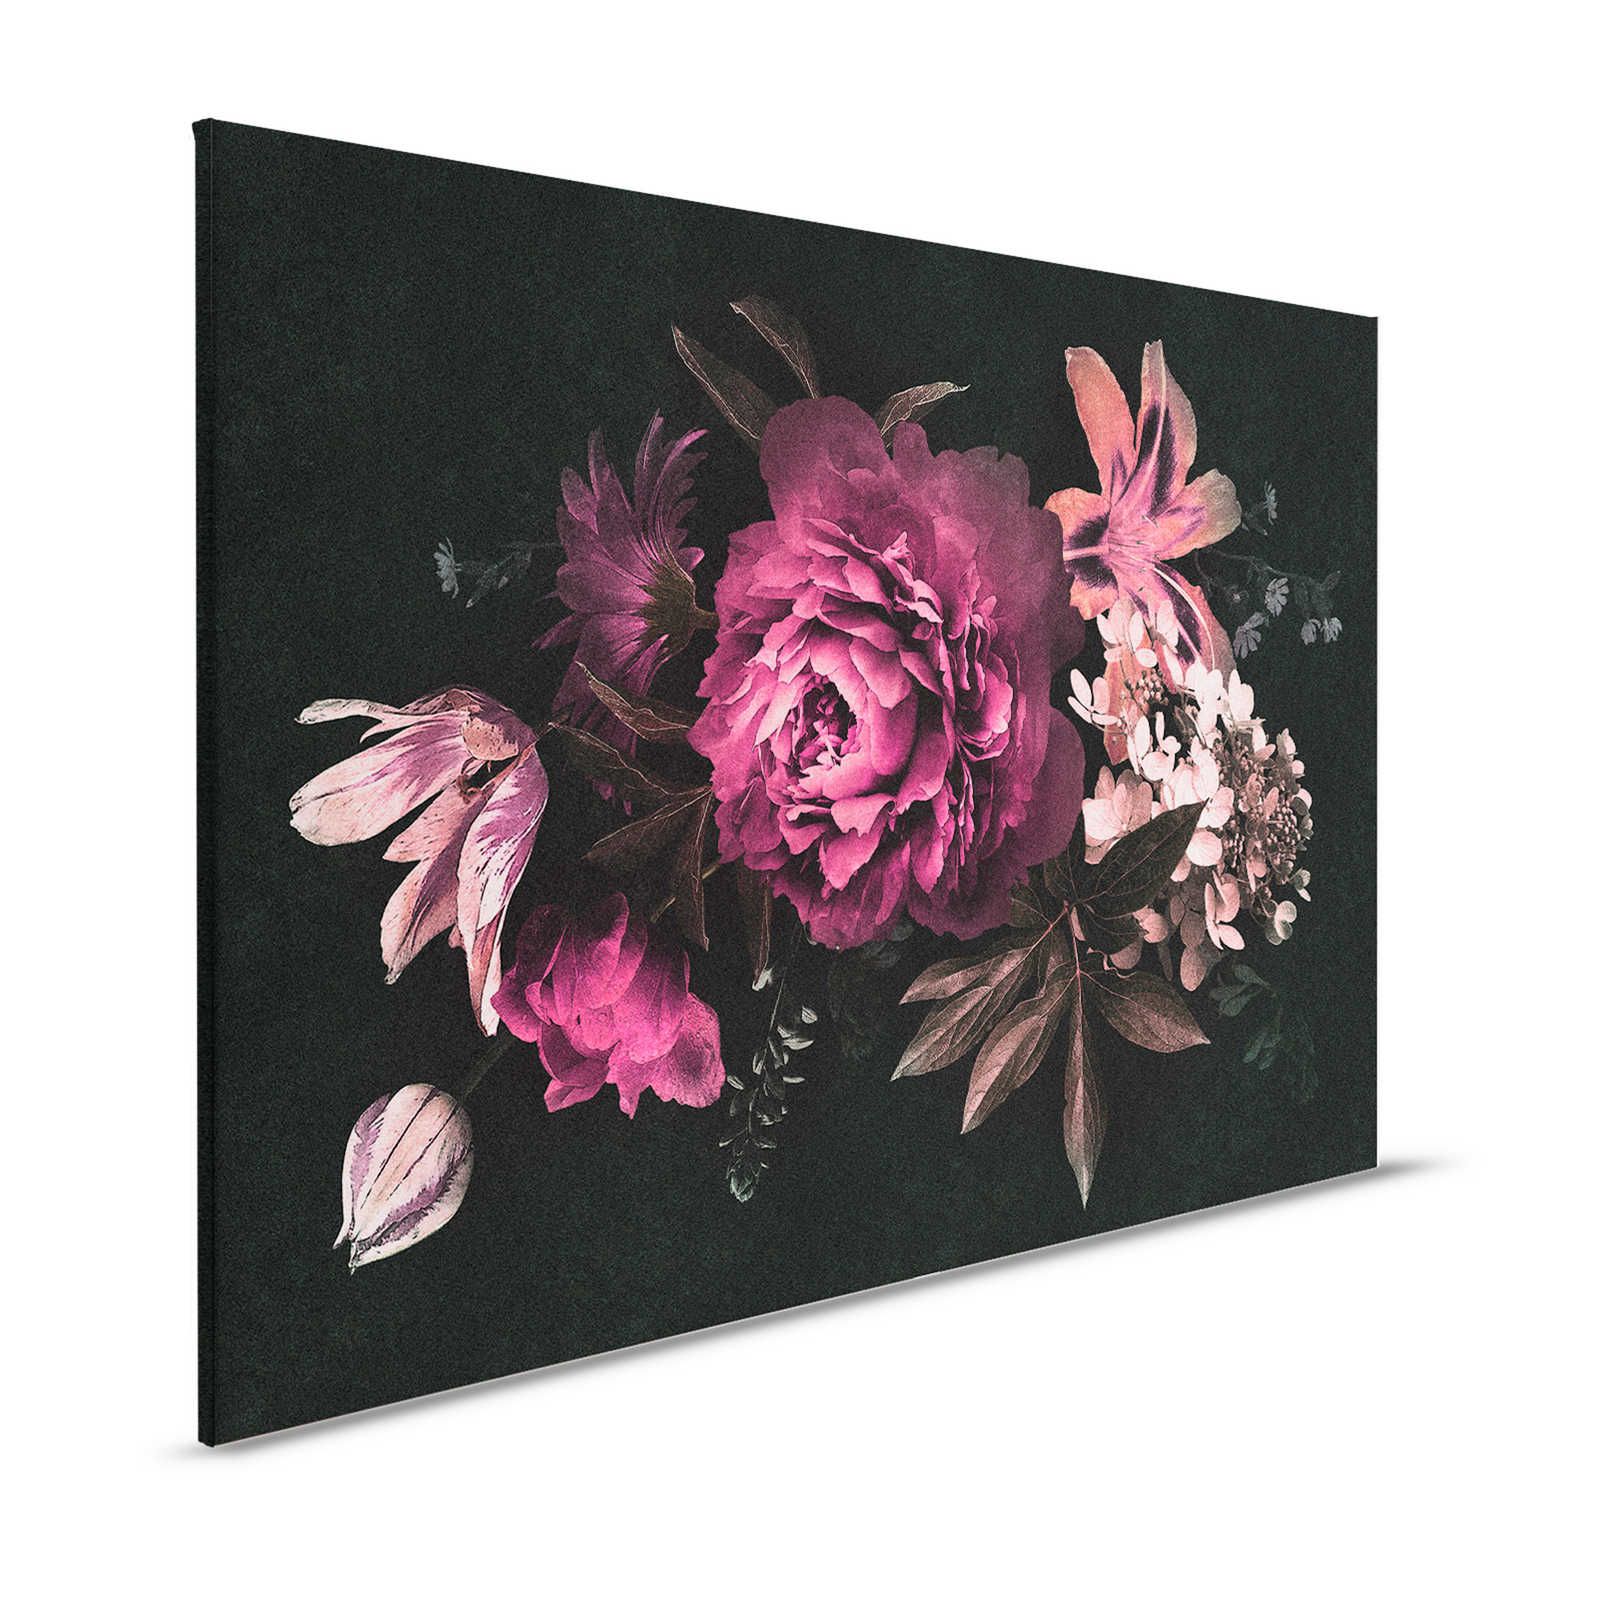 Drama queen 3 - Leinwandbild romantischer Blumenstrauß – 1,20 m x 0,80 m
